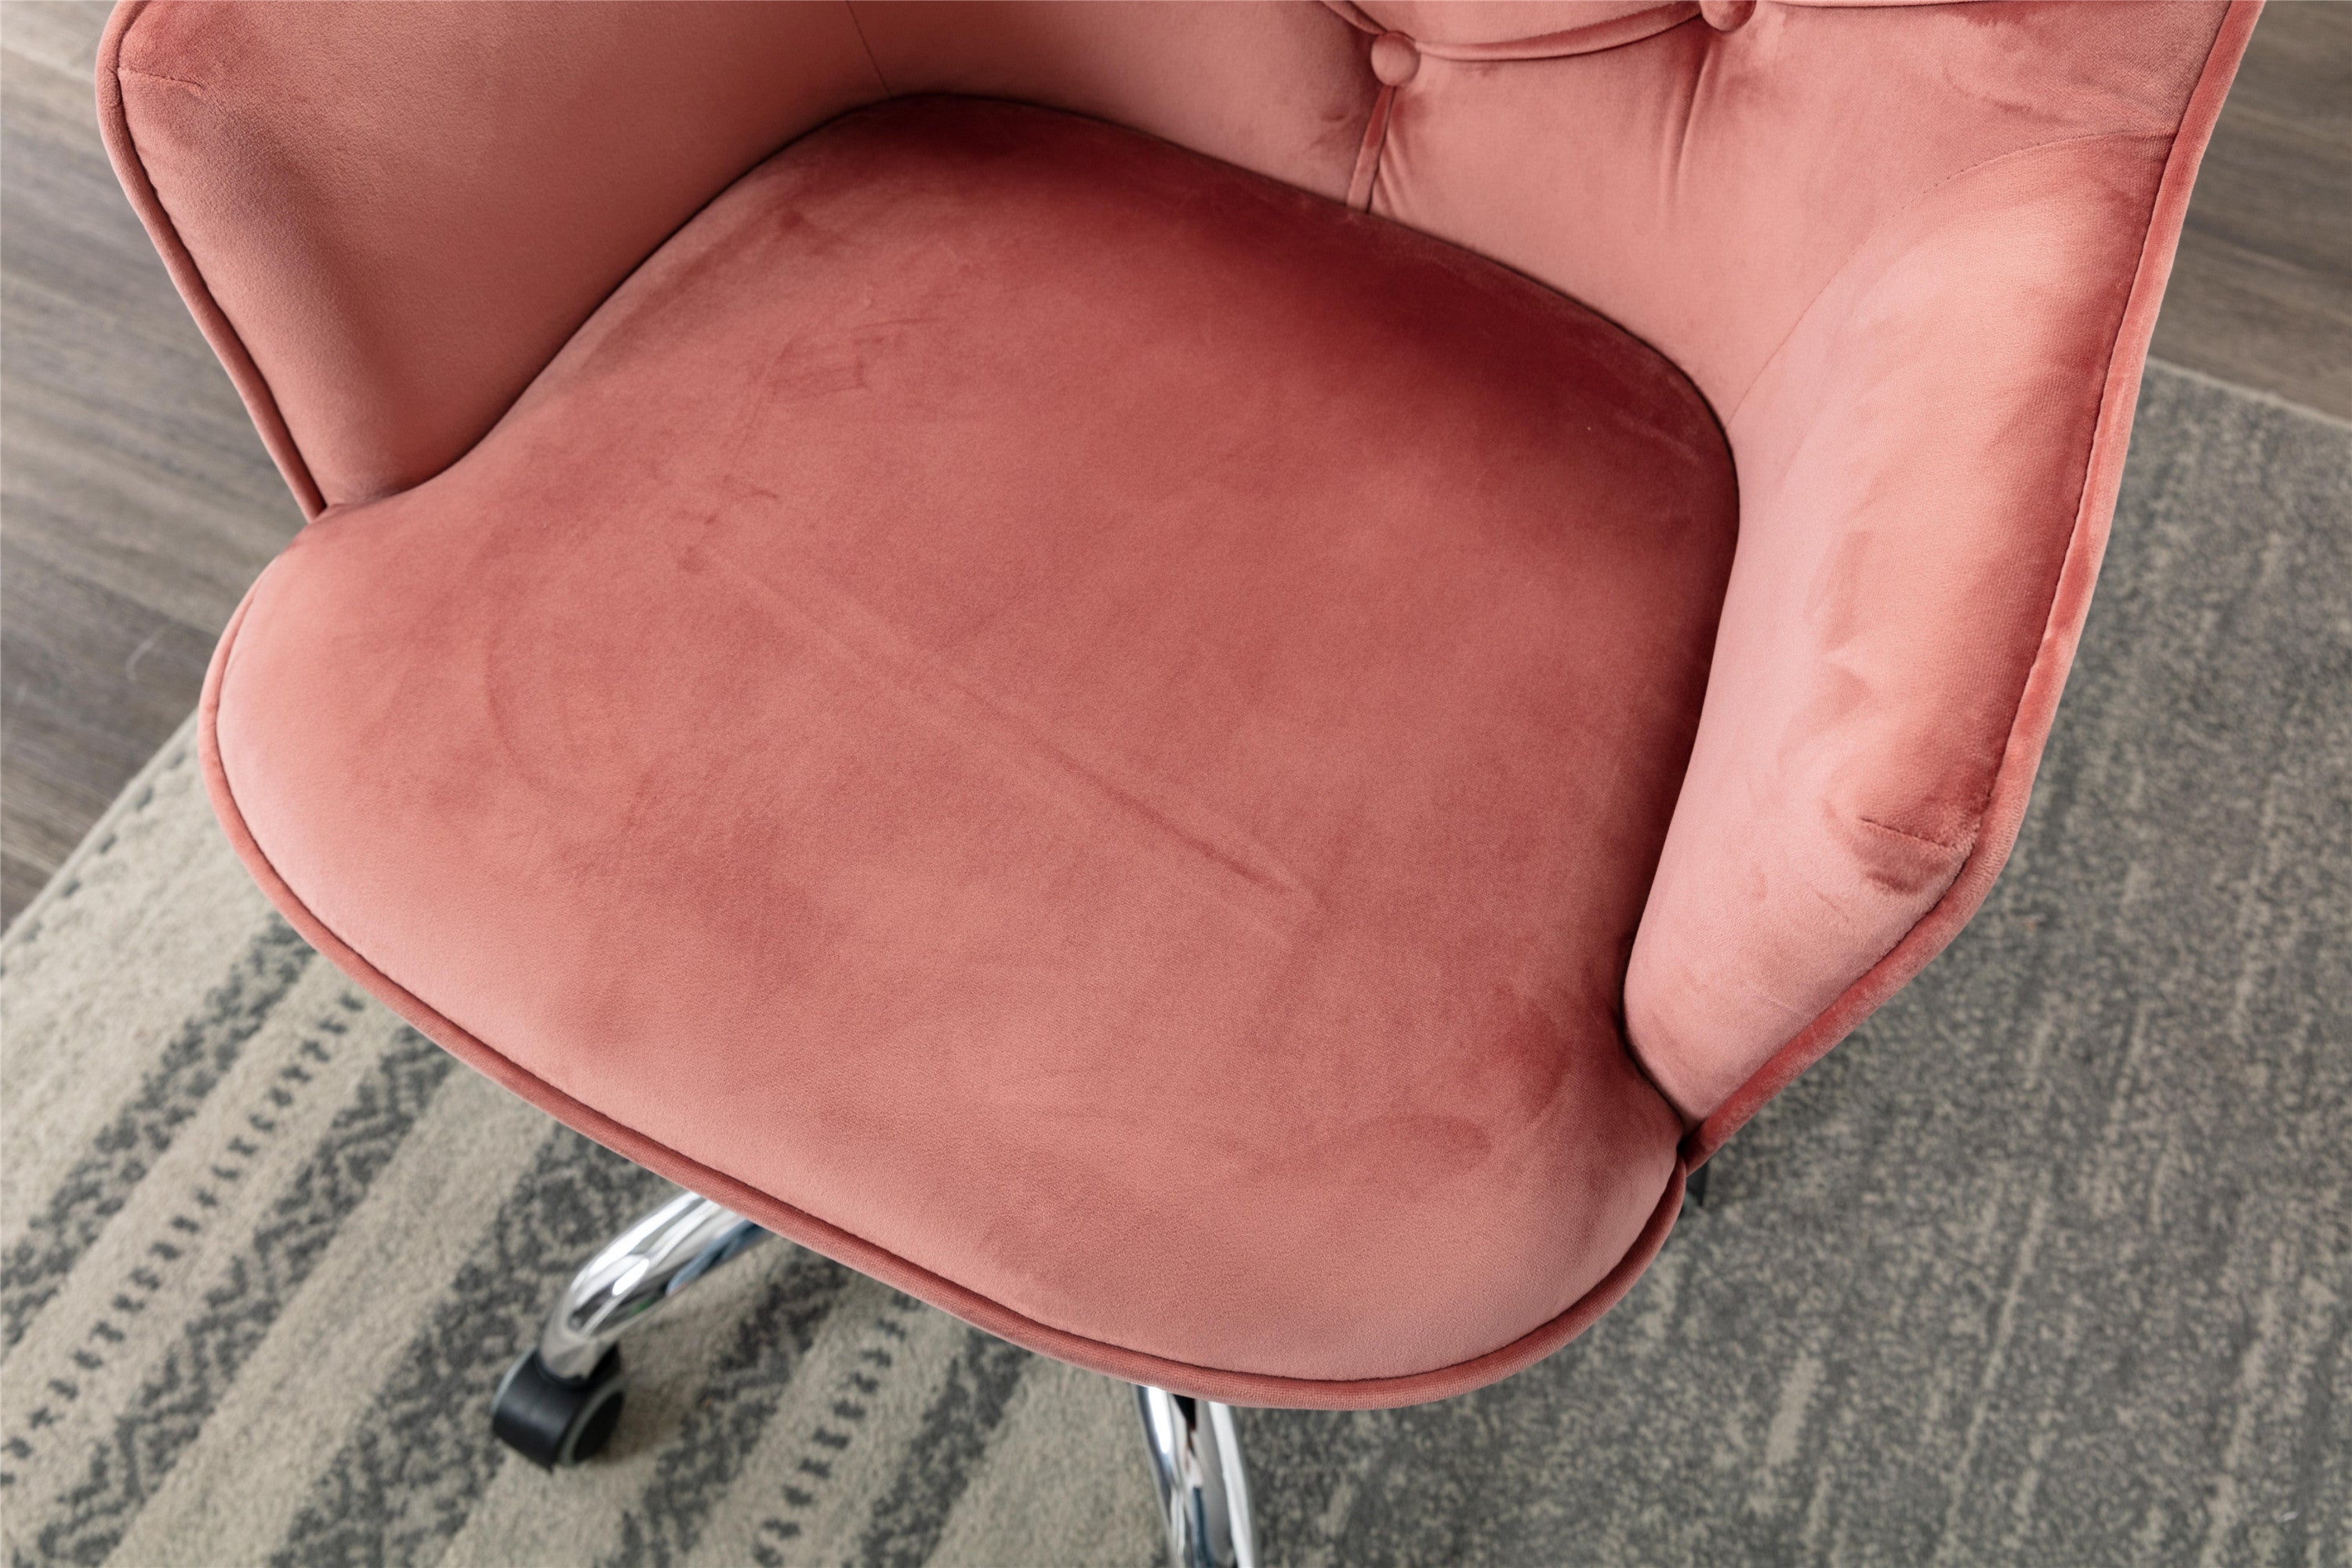 COOLMORE Velvet Swivel Chair (Red)